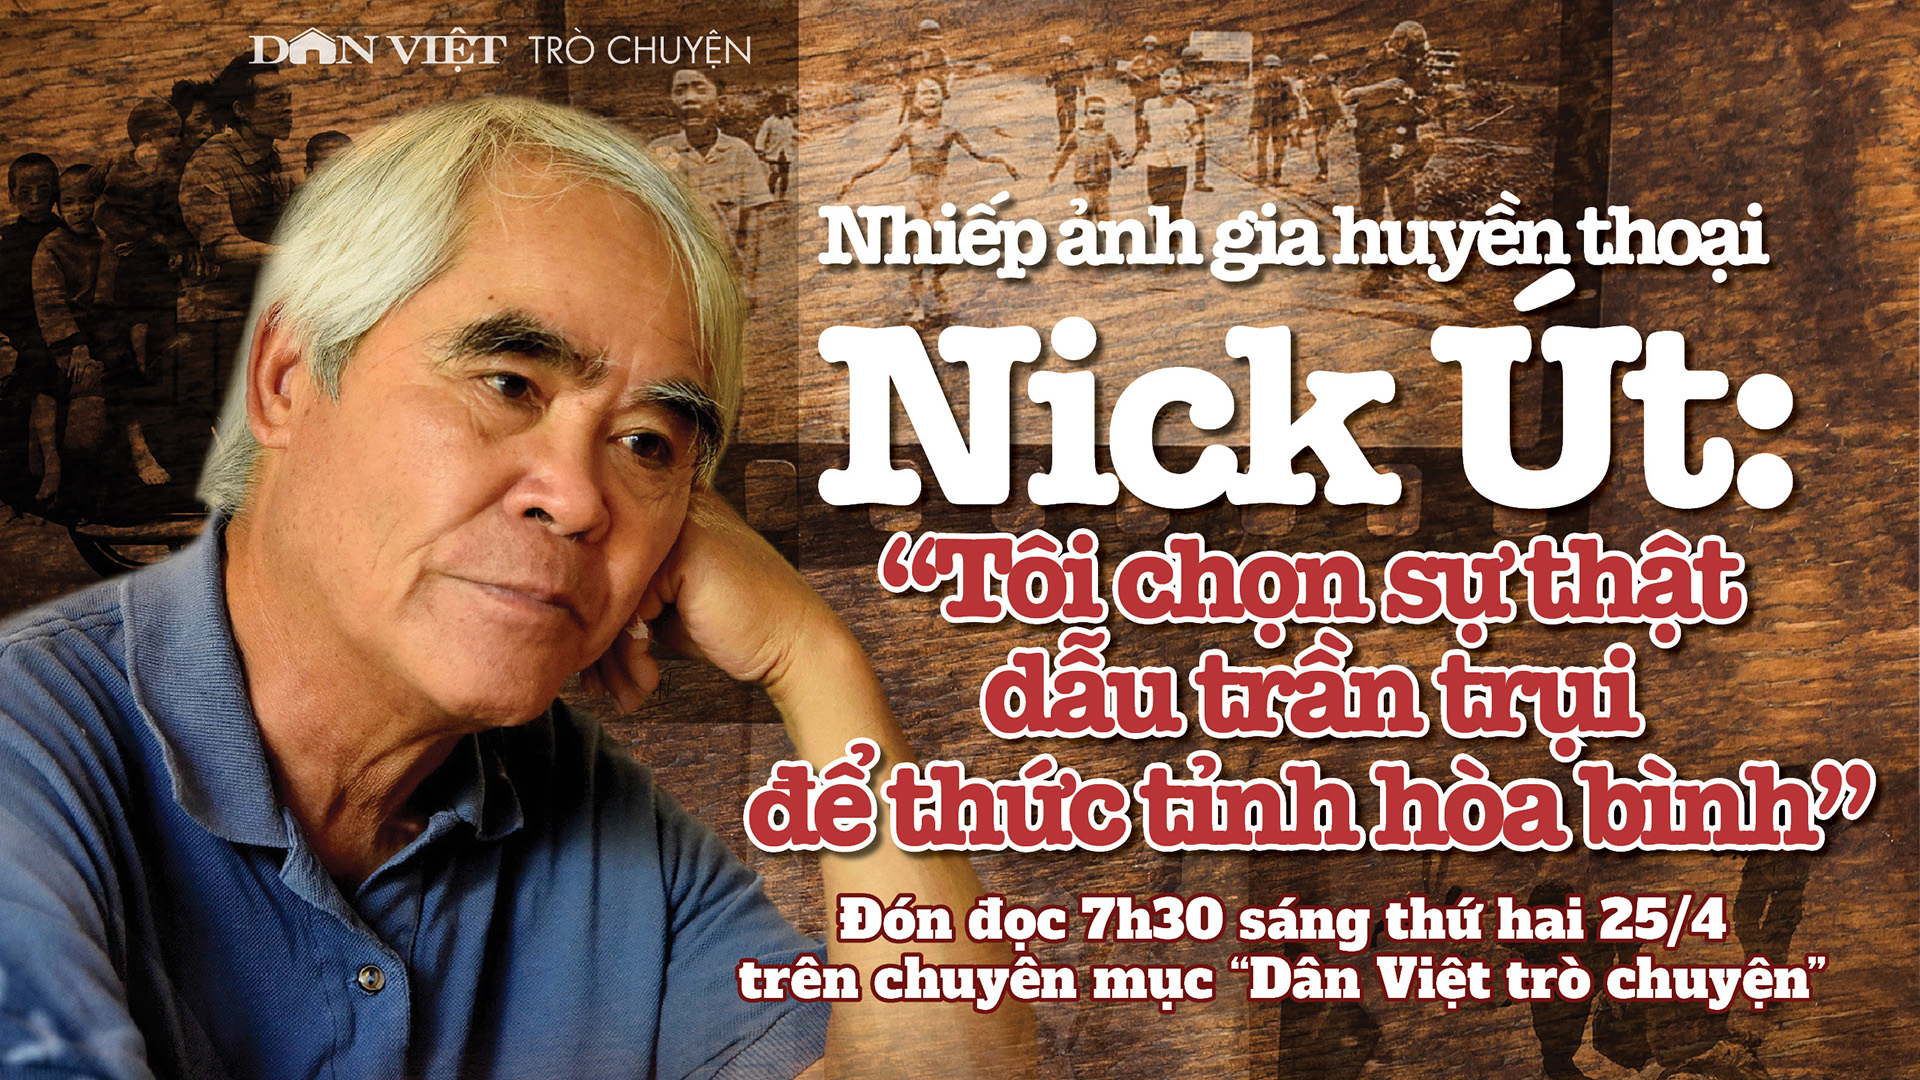 Đón đọc Dân Việt trò chuyện 7h30 thứ Hai(25/4): Nhiếp ảnh gia Nick Út chọn sự thật dẫu trần trụi để thức tỉnh hoà bình - Ảnh 1.